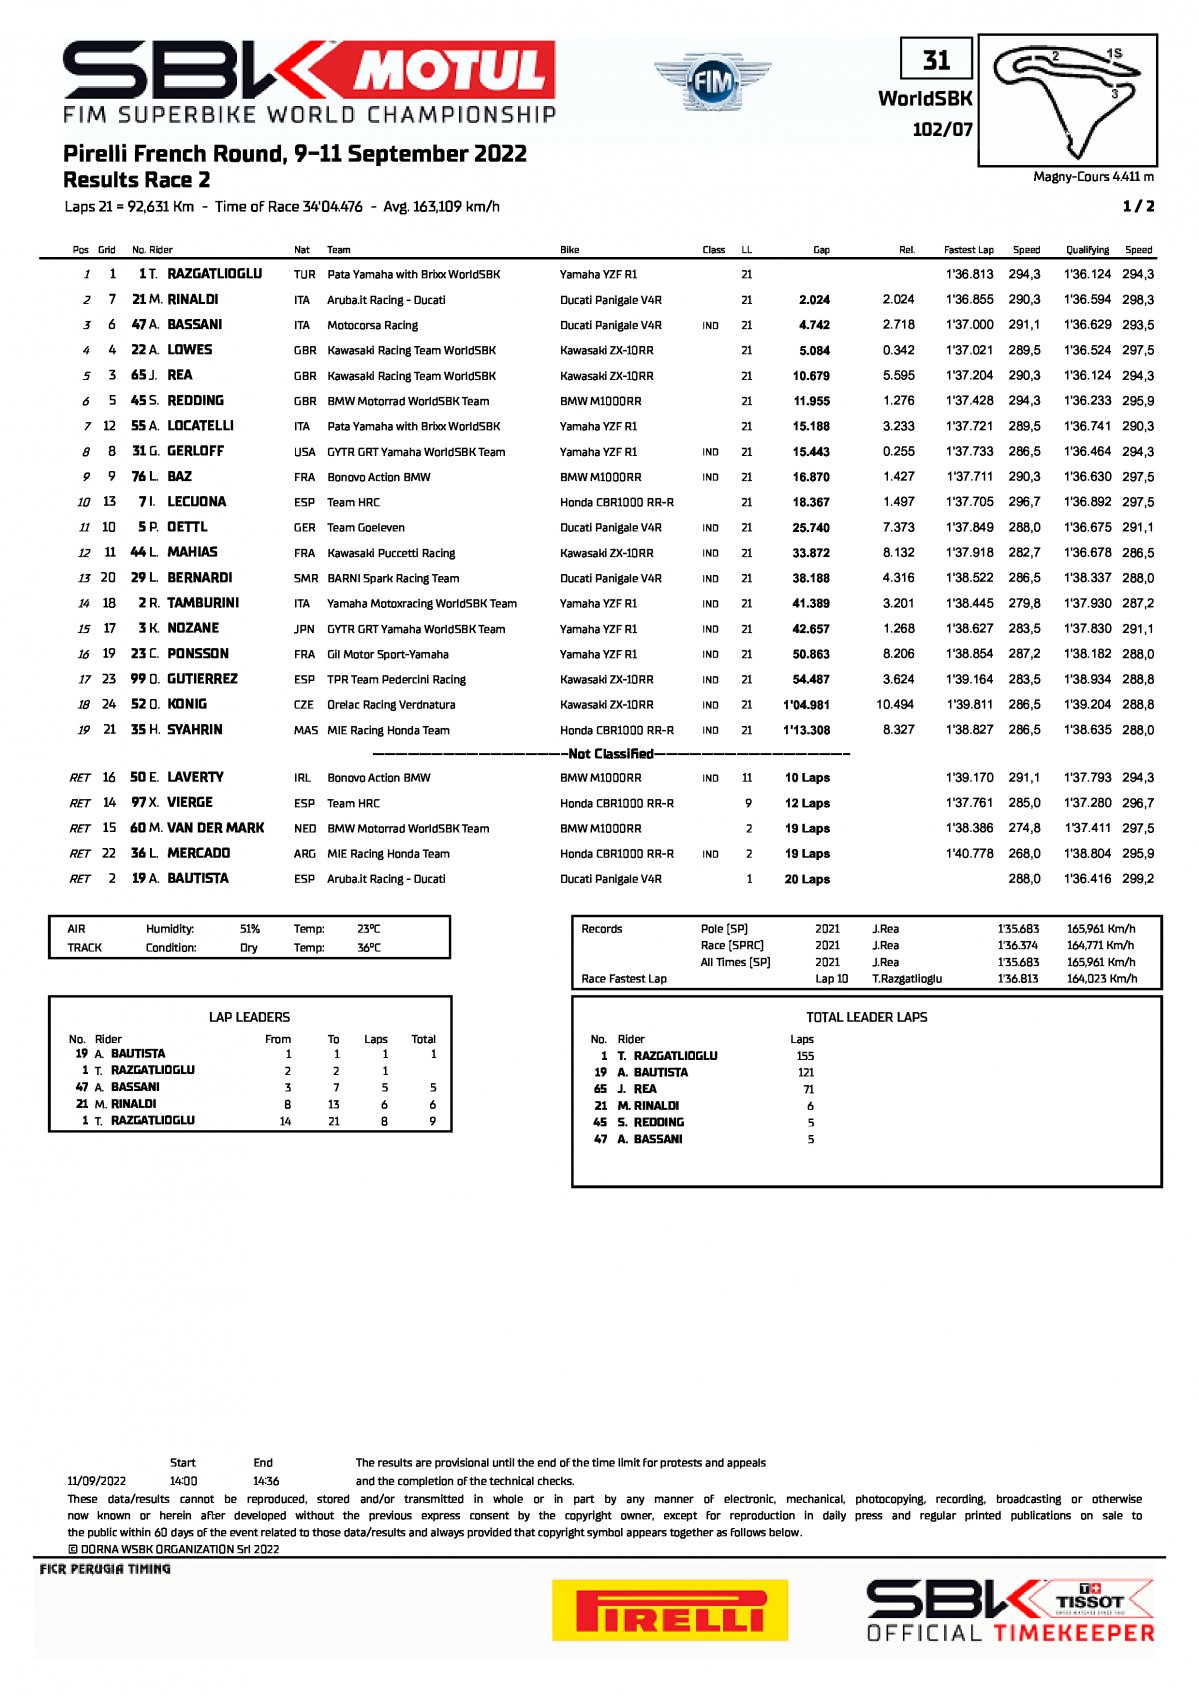 Результаты 2 гонки FRAWorldSBK, Magny-Cours (11/09/2022)